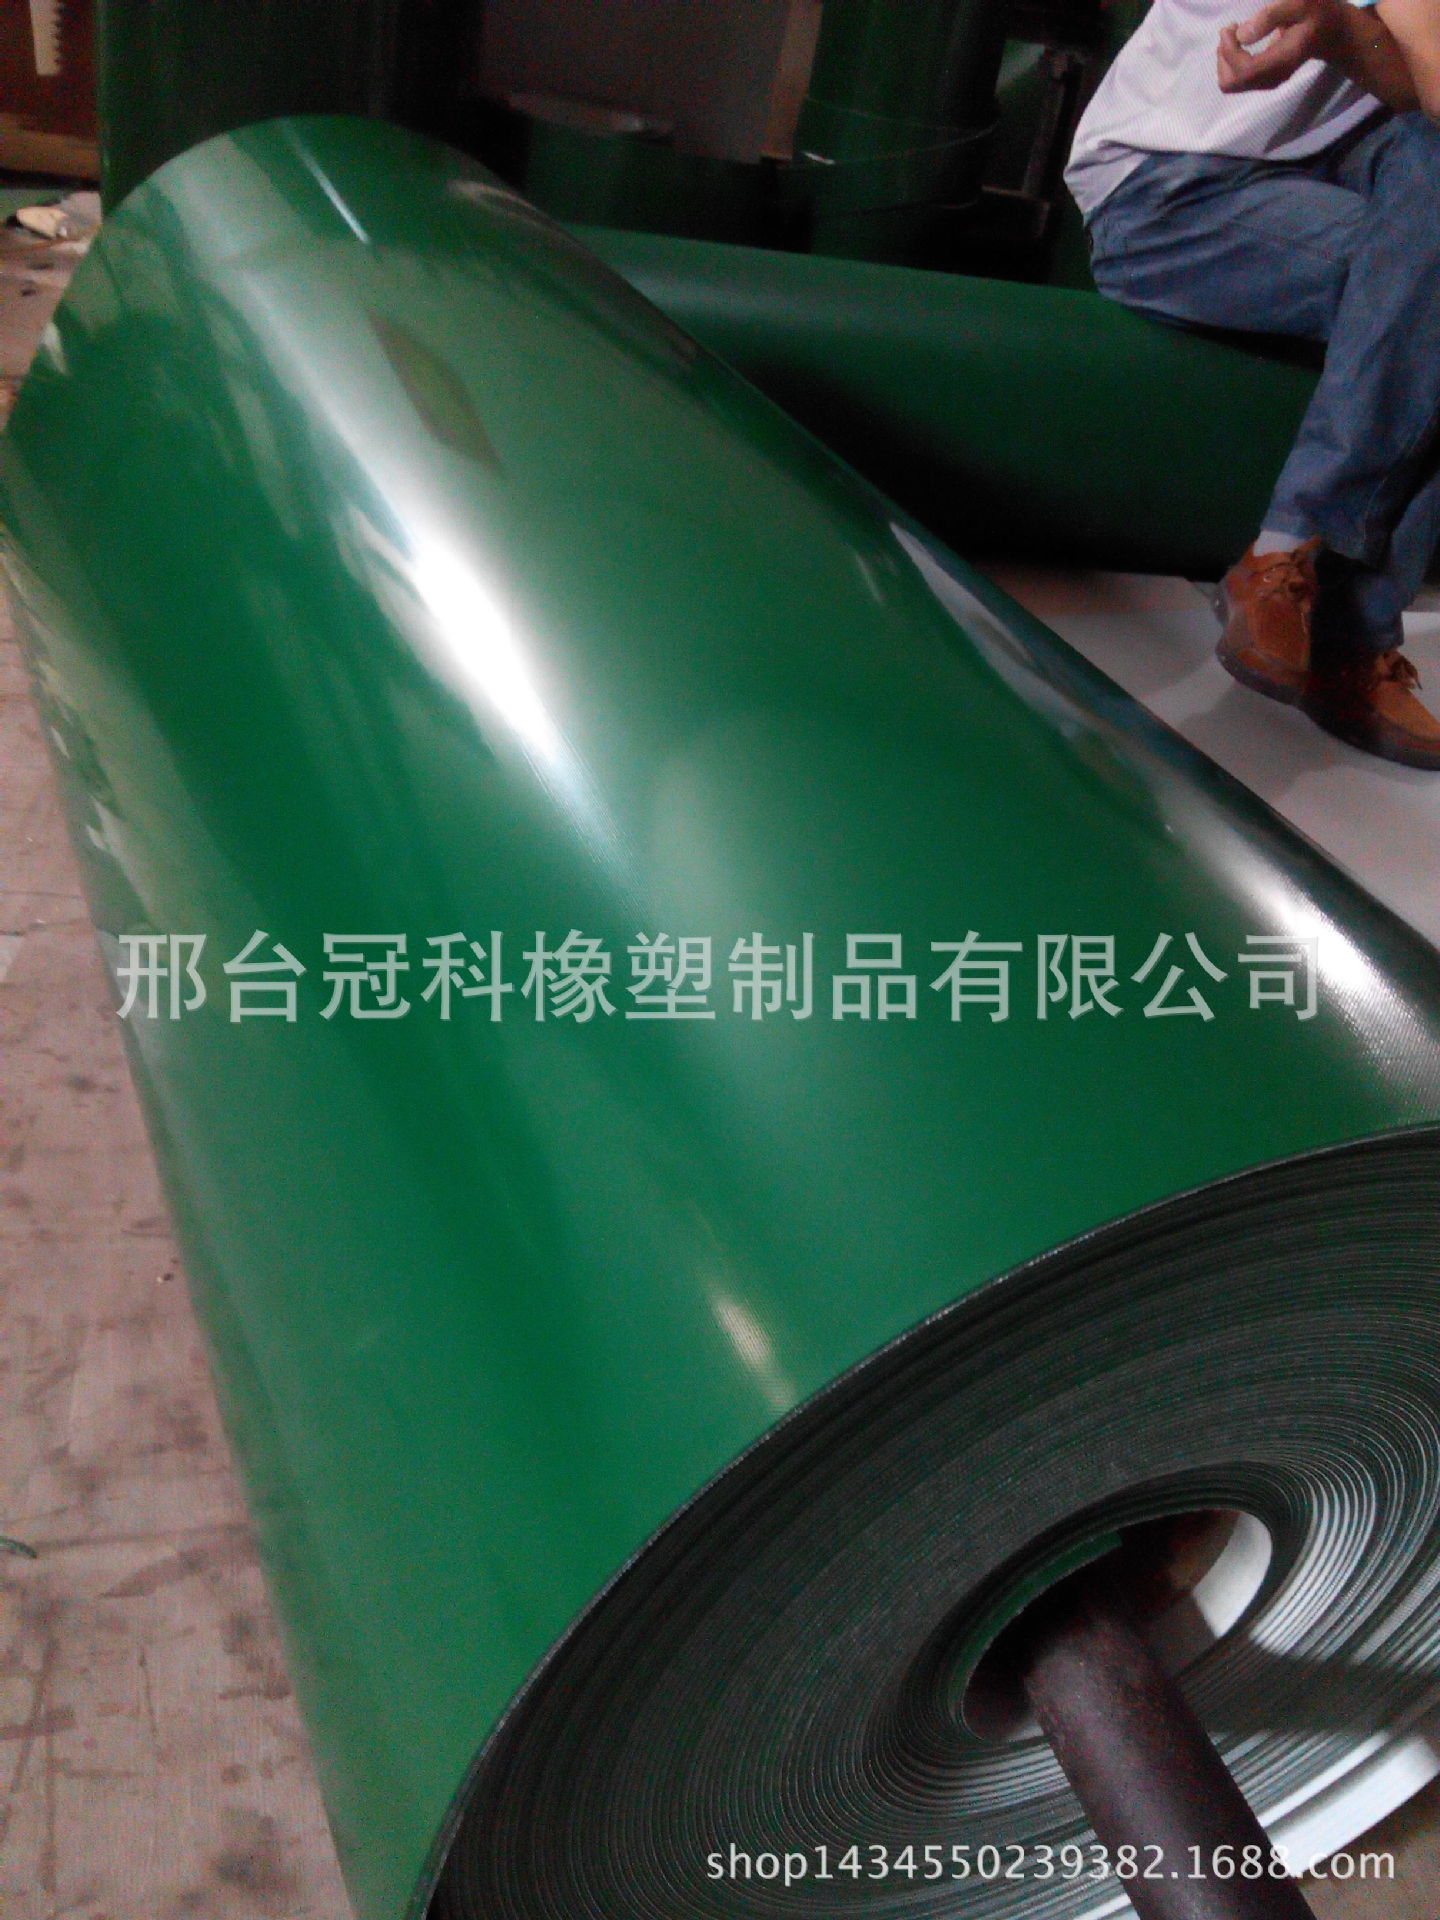 绿色平皮带草花纹输送带钻石纹输送带传动带工业输送带橡胶